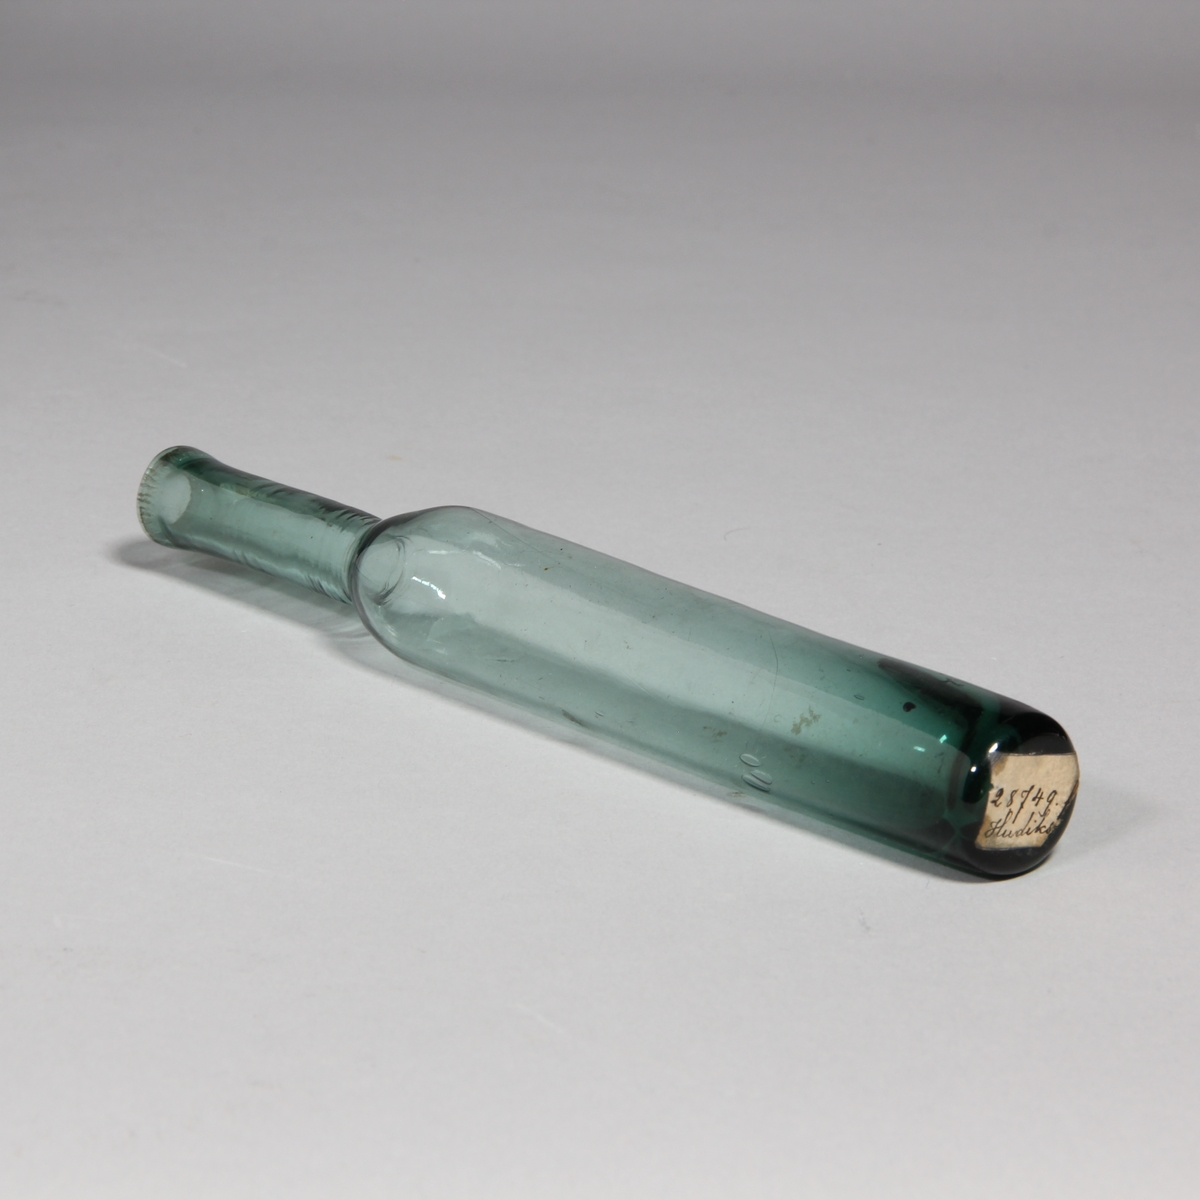 Luktvattenflaska av grönt glas, cylindrisk med hög hals.